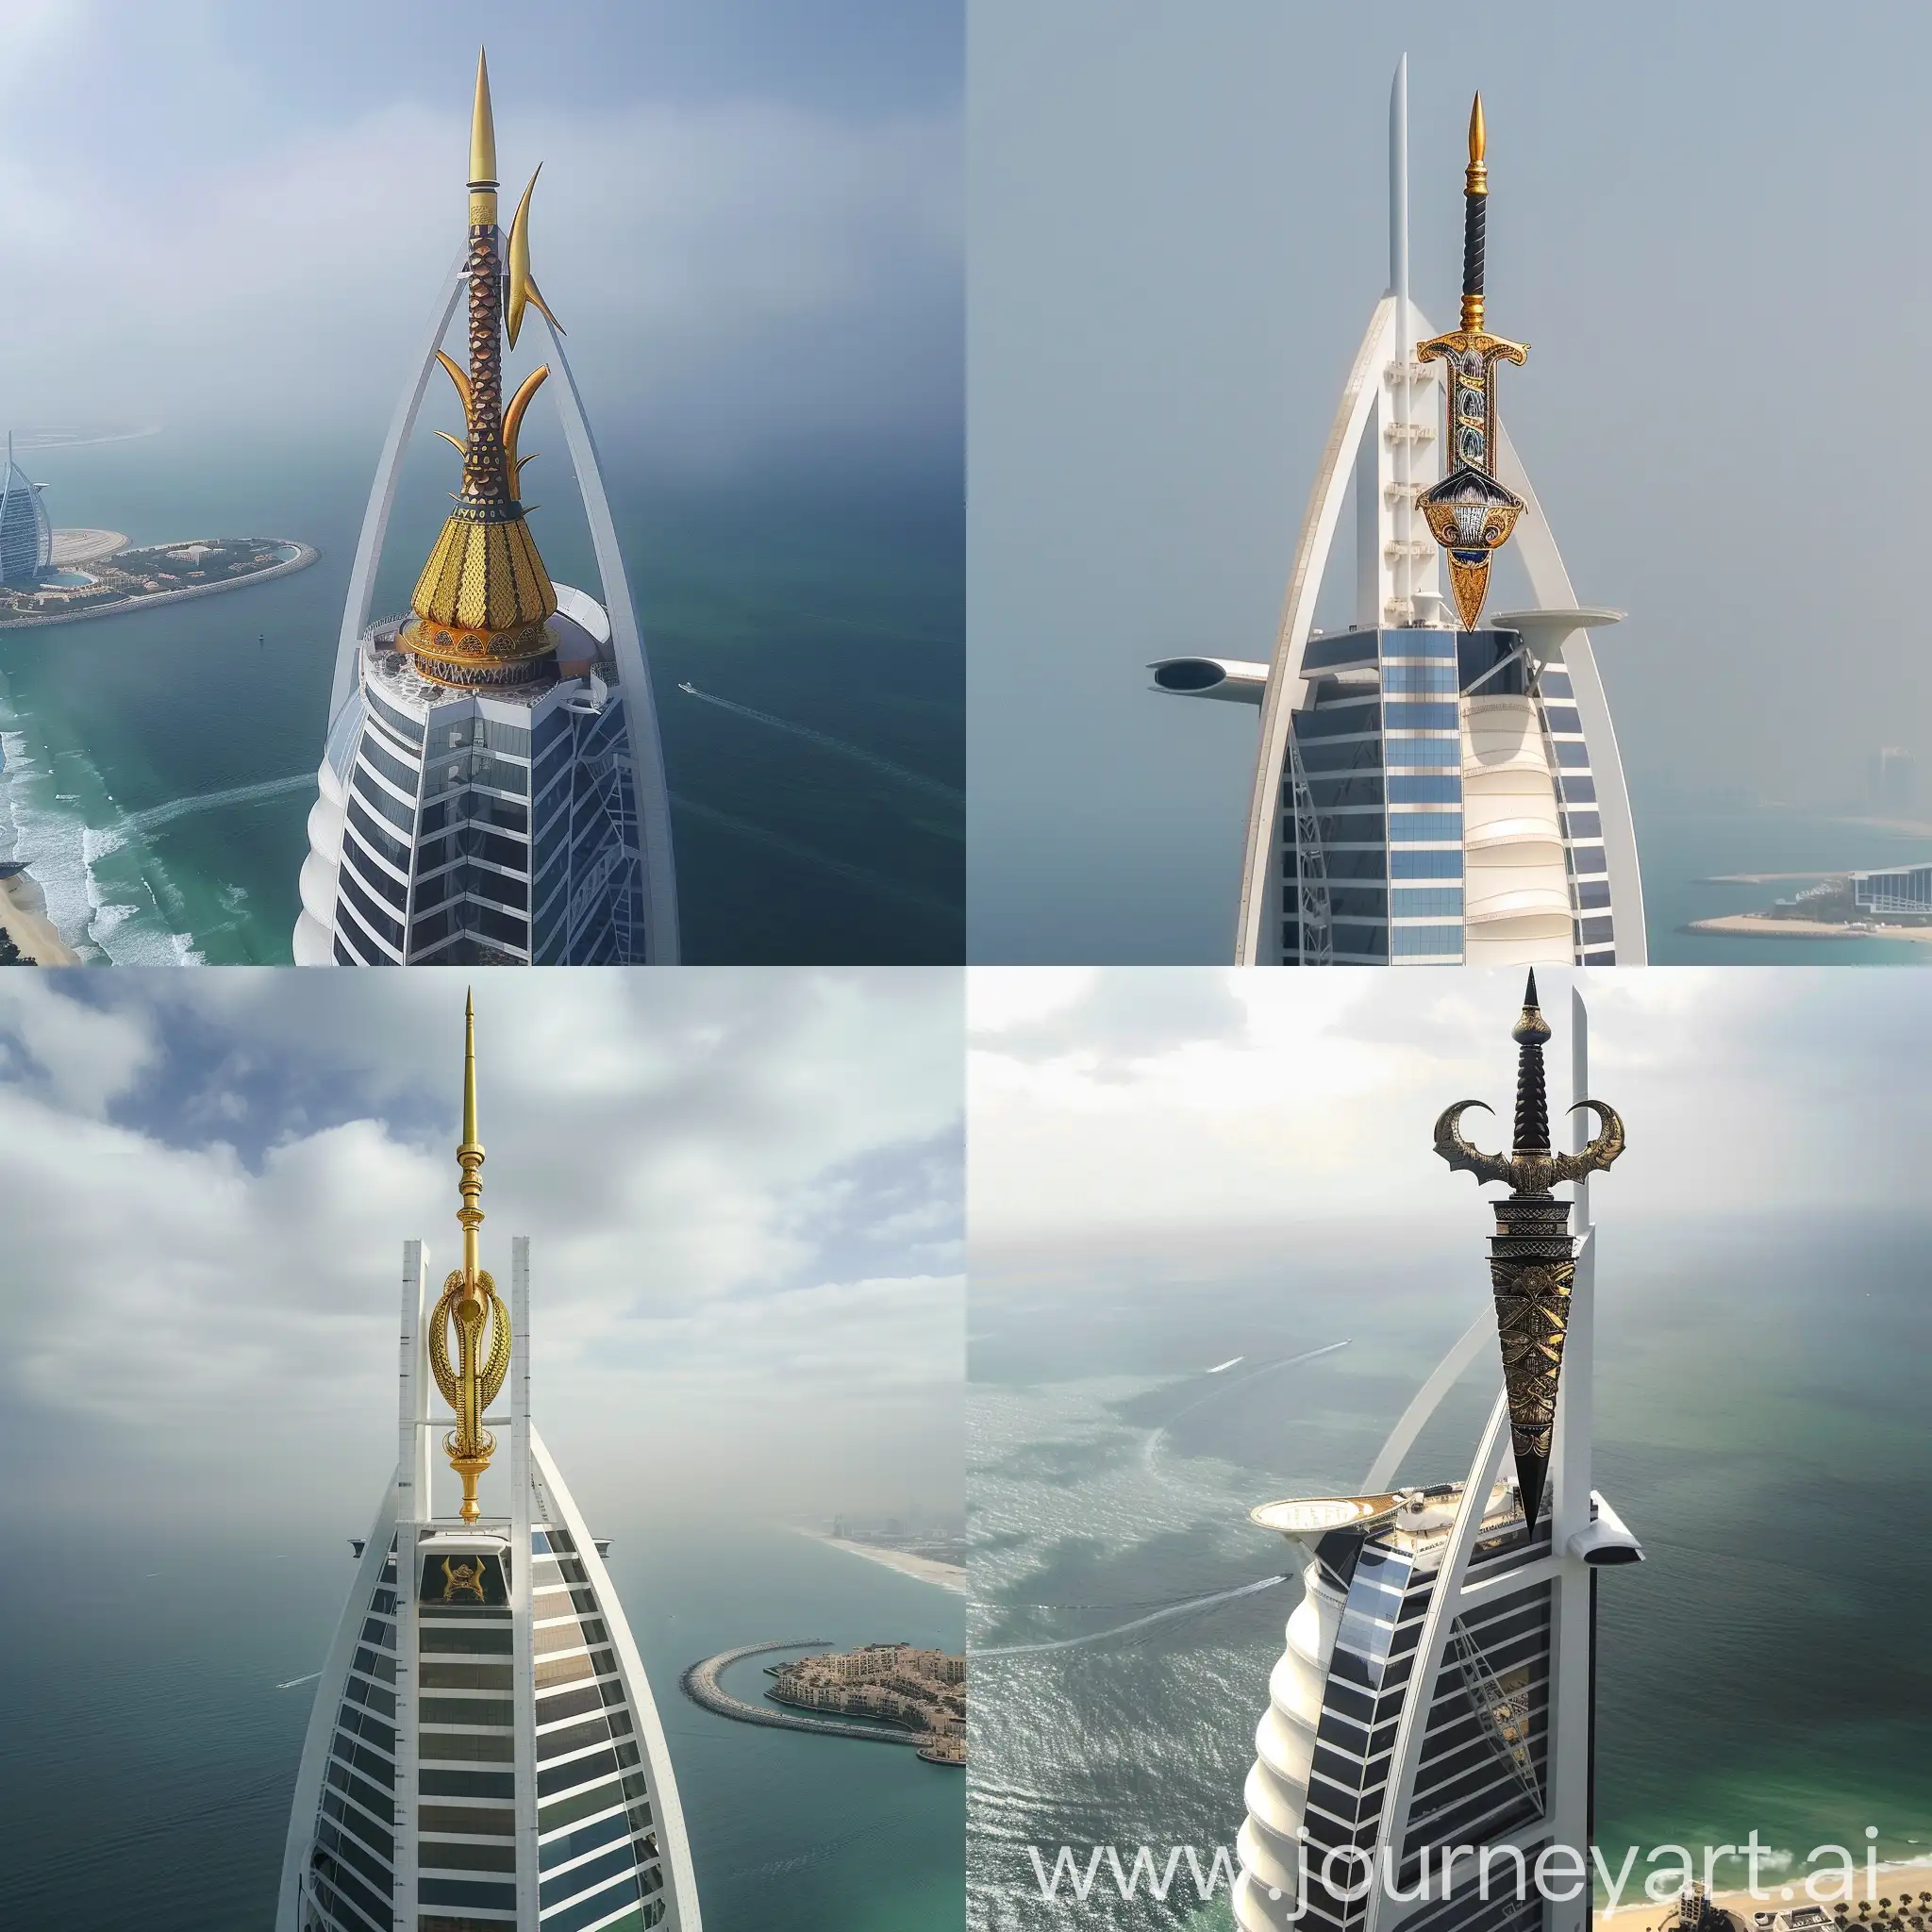 Malay Keris on top of the Burj Al Arab